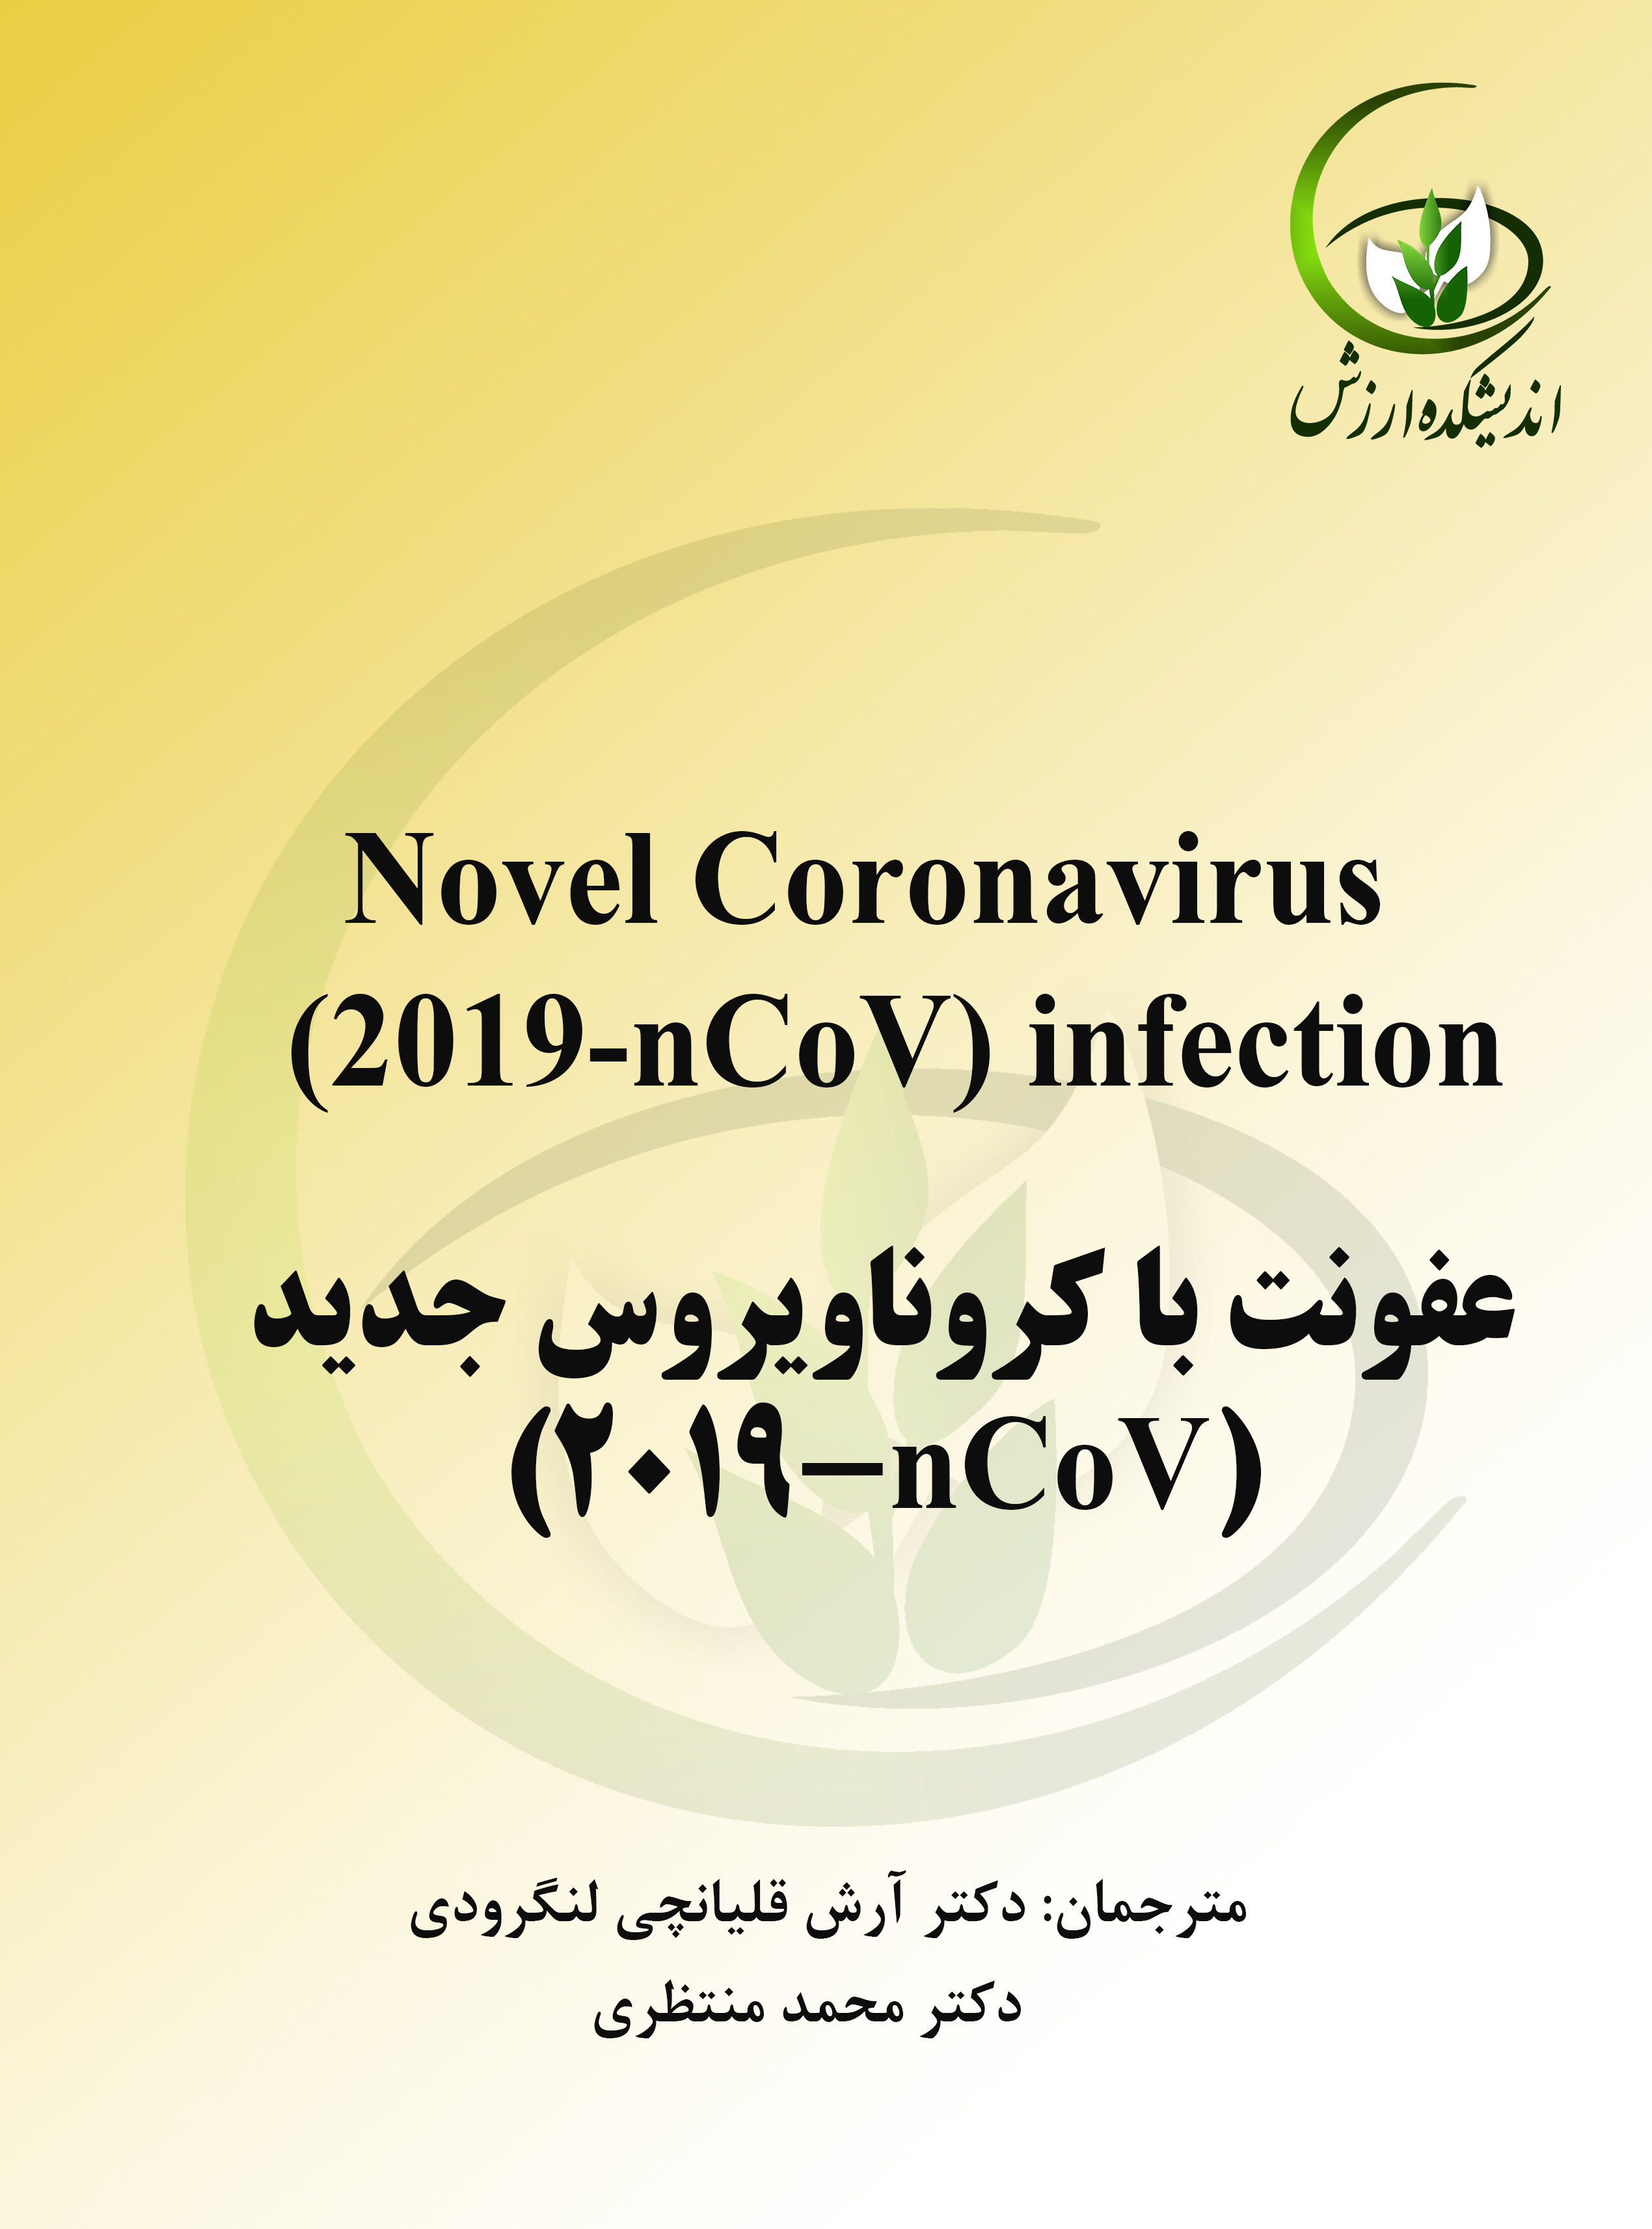 عفونت با کروناویروس جدید (2019-nCoV)